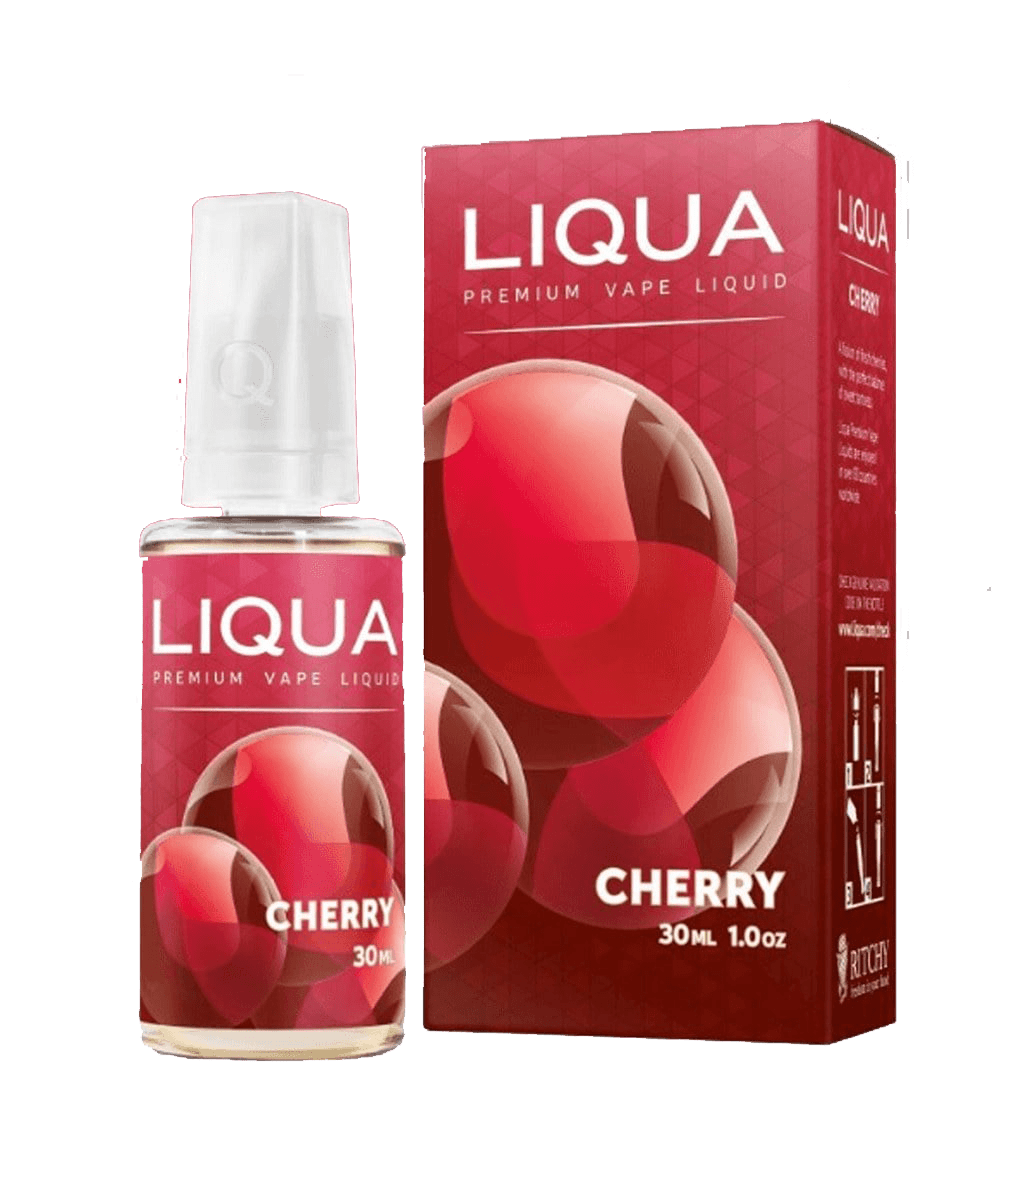 Lichid Liqua Liqua Cherry 30ML fumezi.com